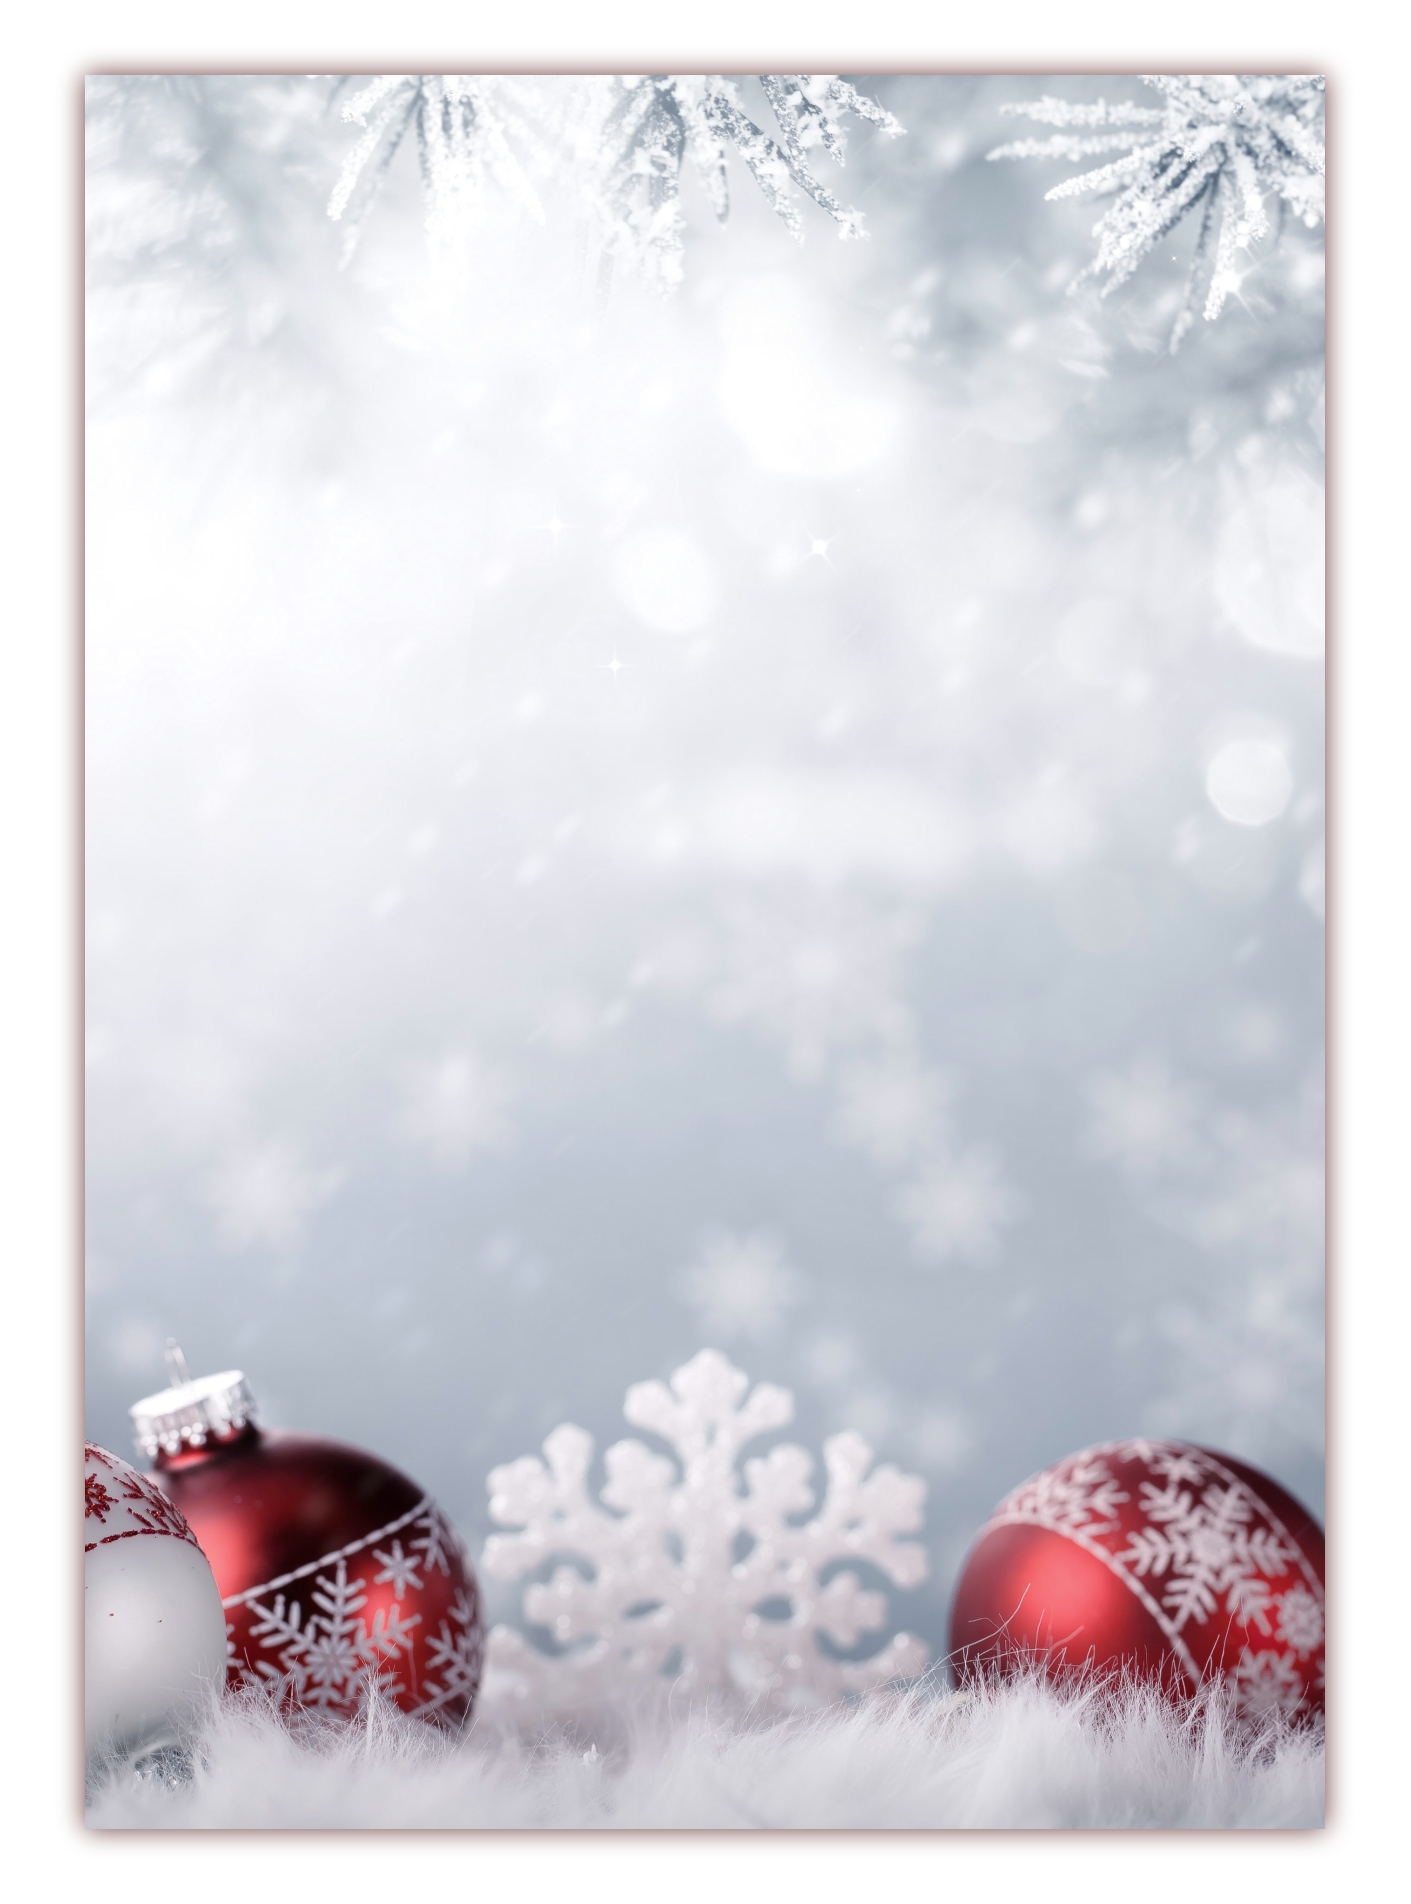 500 St/ück Weihnachten Bonbonpapier S/ü/ßigkeitspapier Wachspapier Verpackungspapier f/ür Schokolade S/ü/ßigkeiten Candy Packung Verpackung von Schokoladen-Bonbon-Nachtischen in Lebensmittelqualit/ät 2